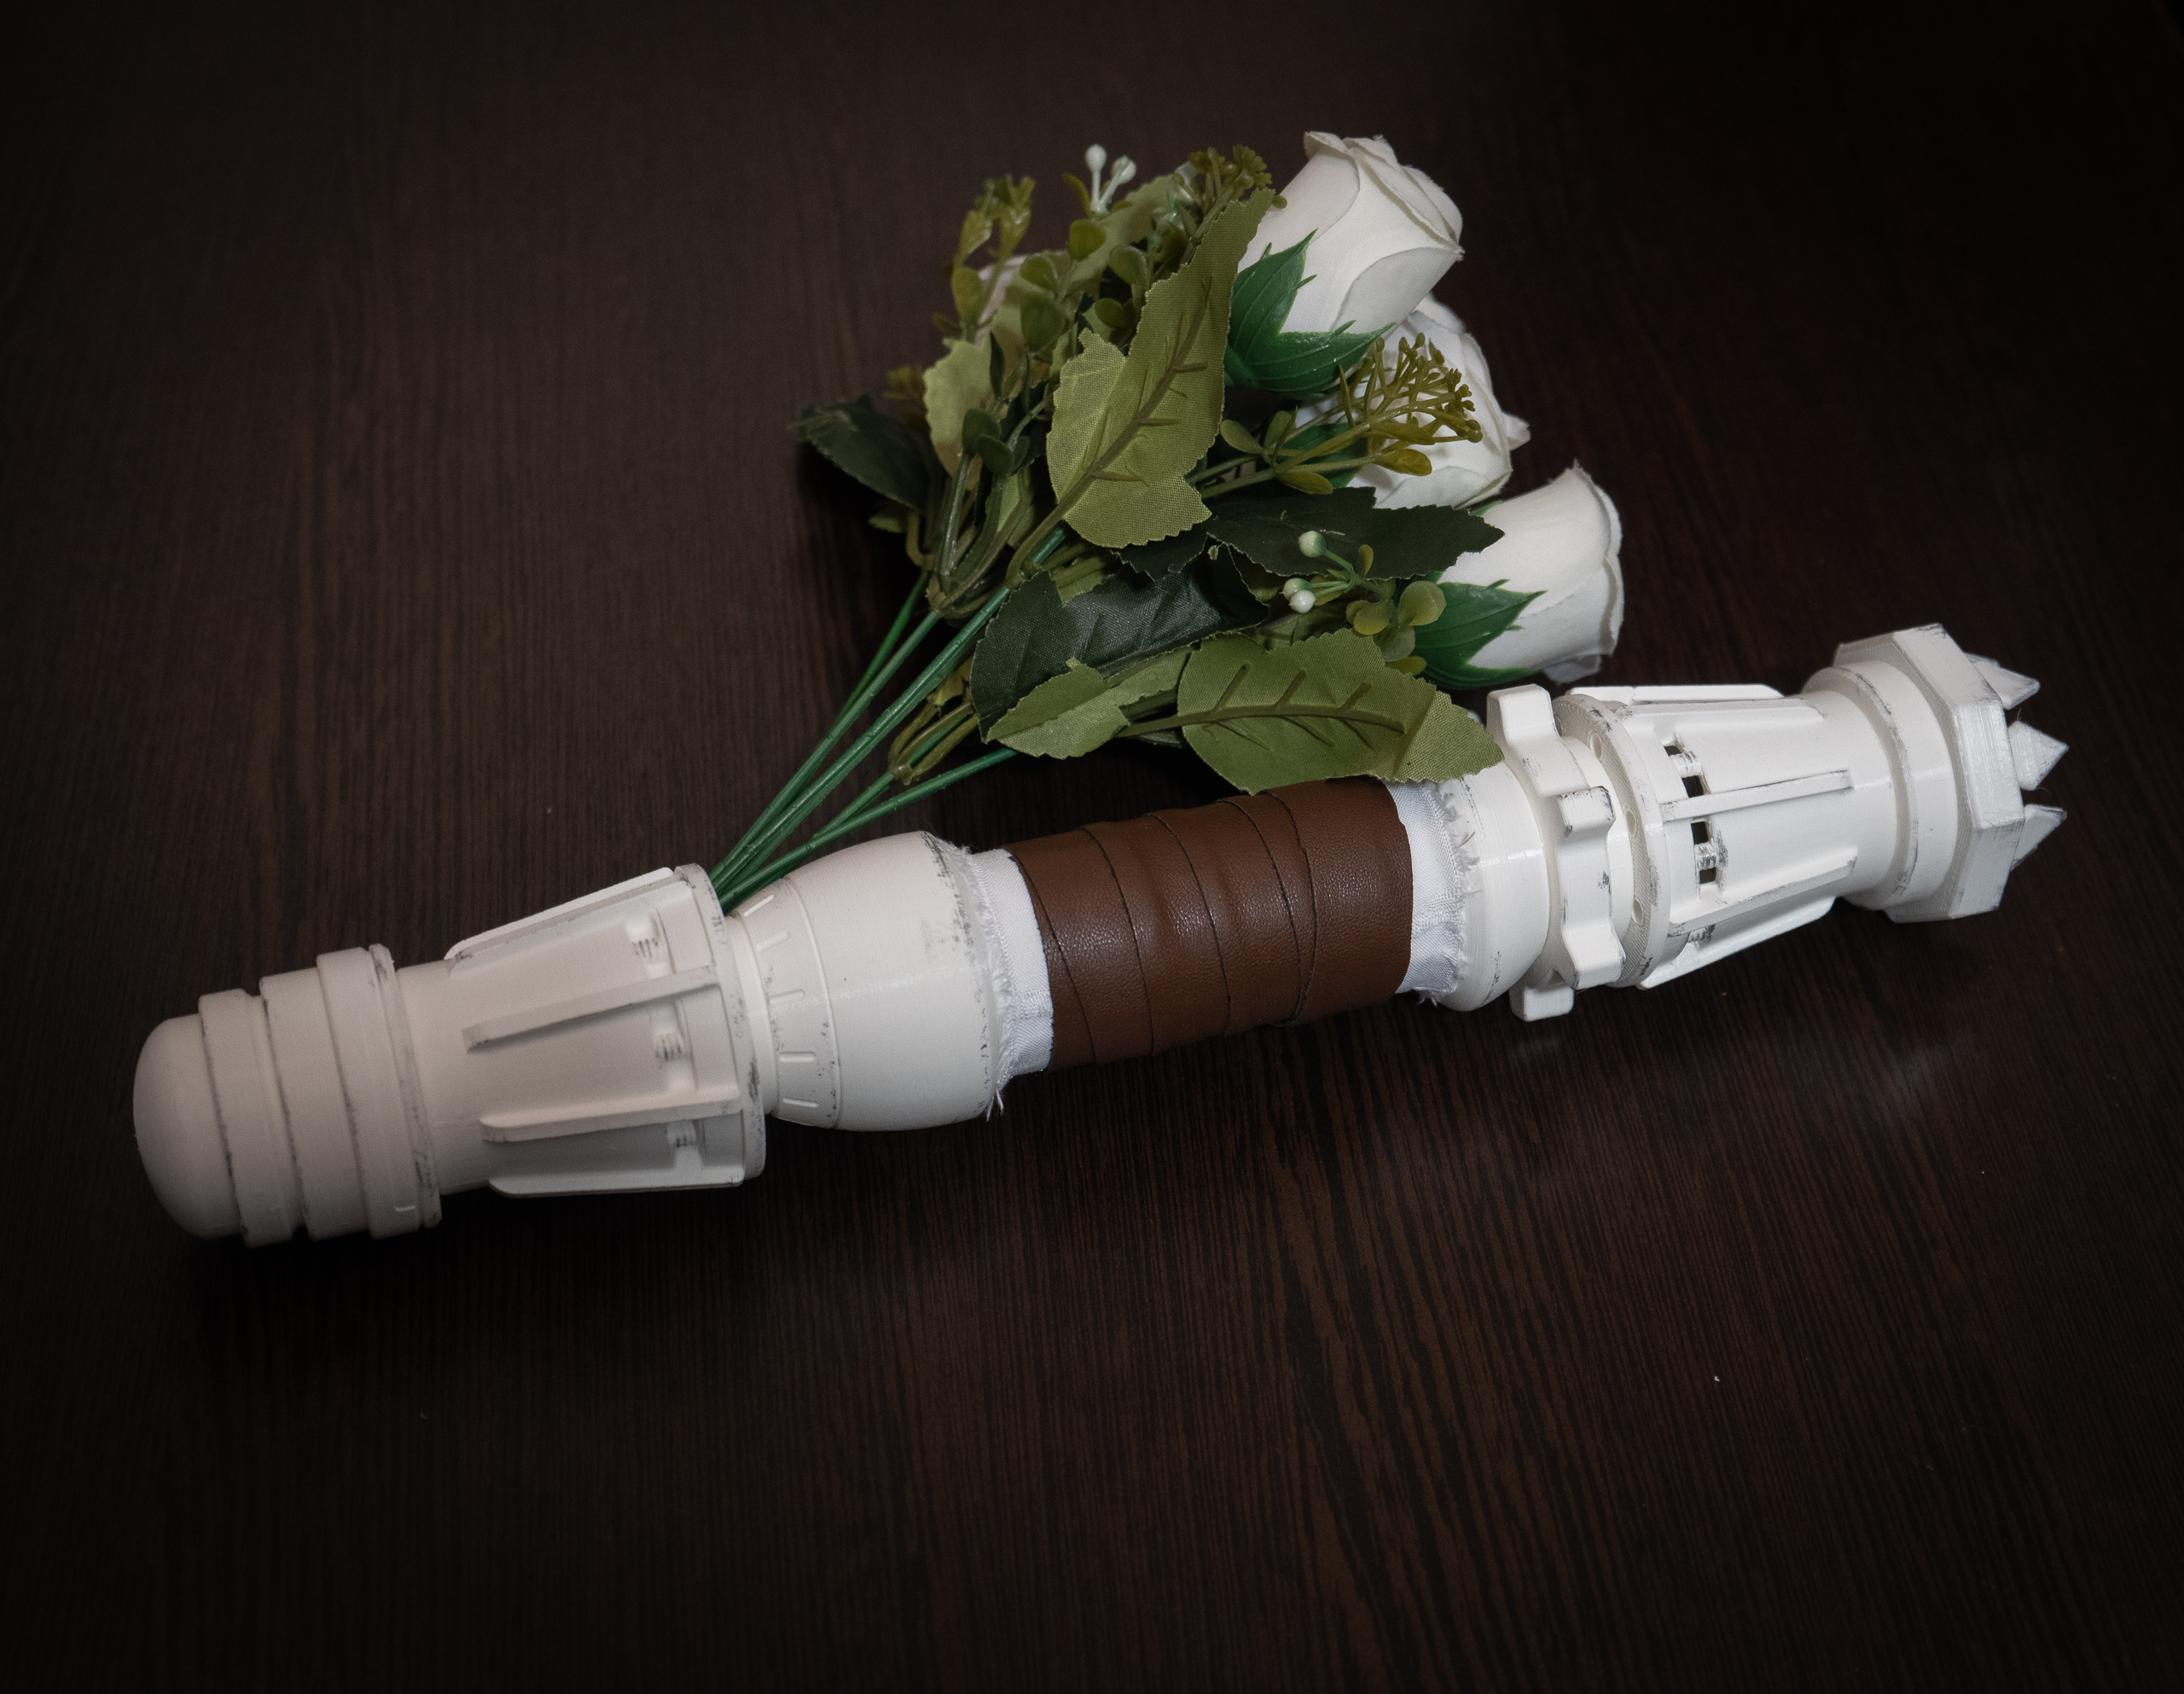 Rey wedding bouquet lightsaber hilt